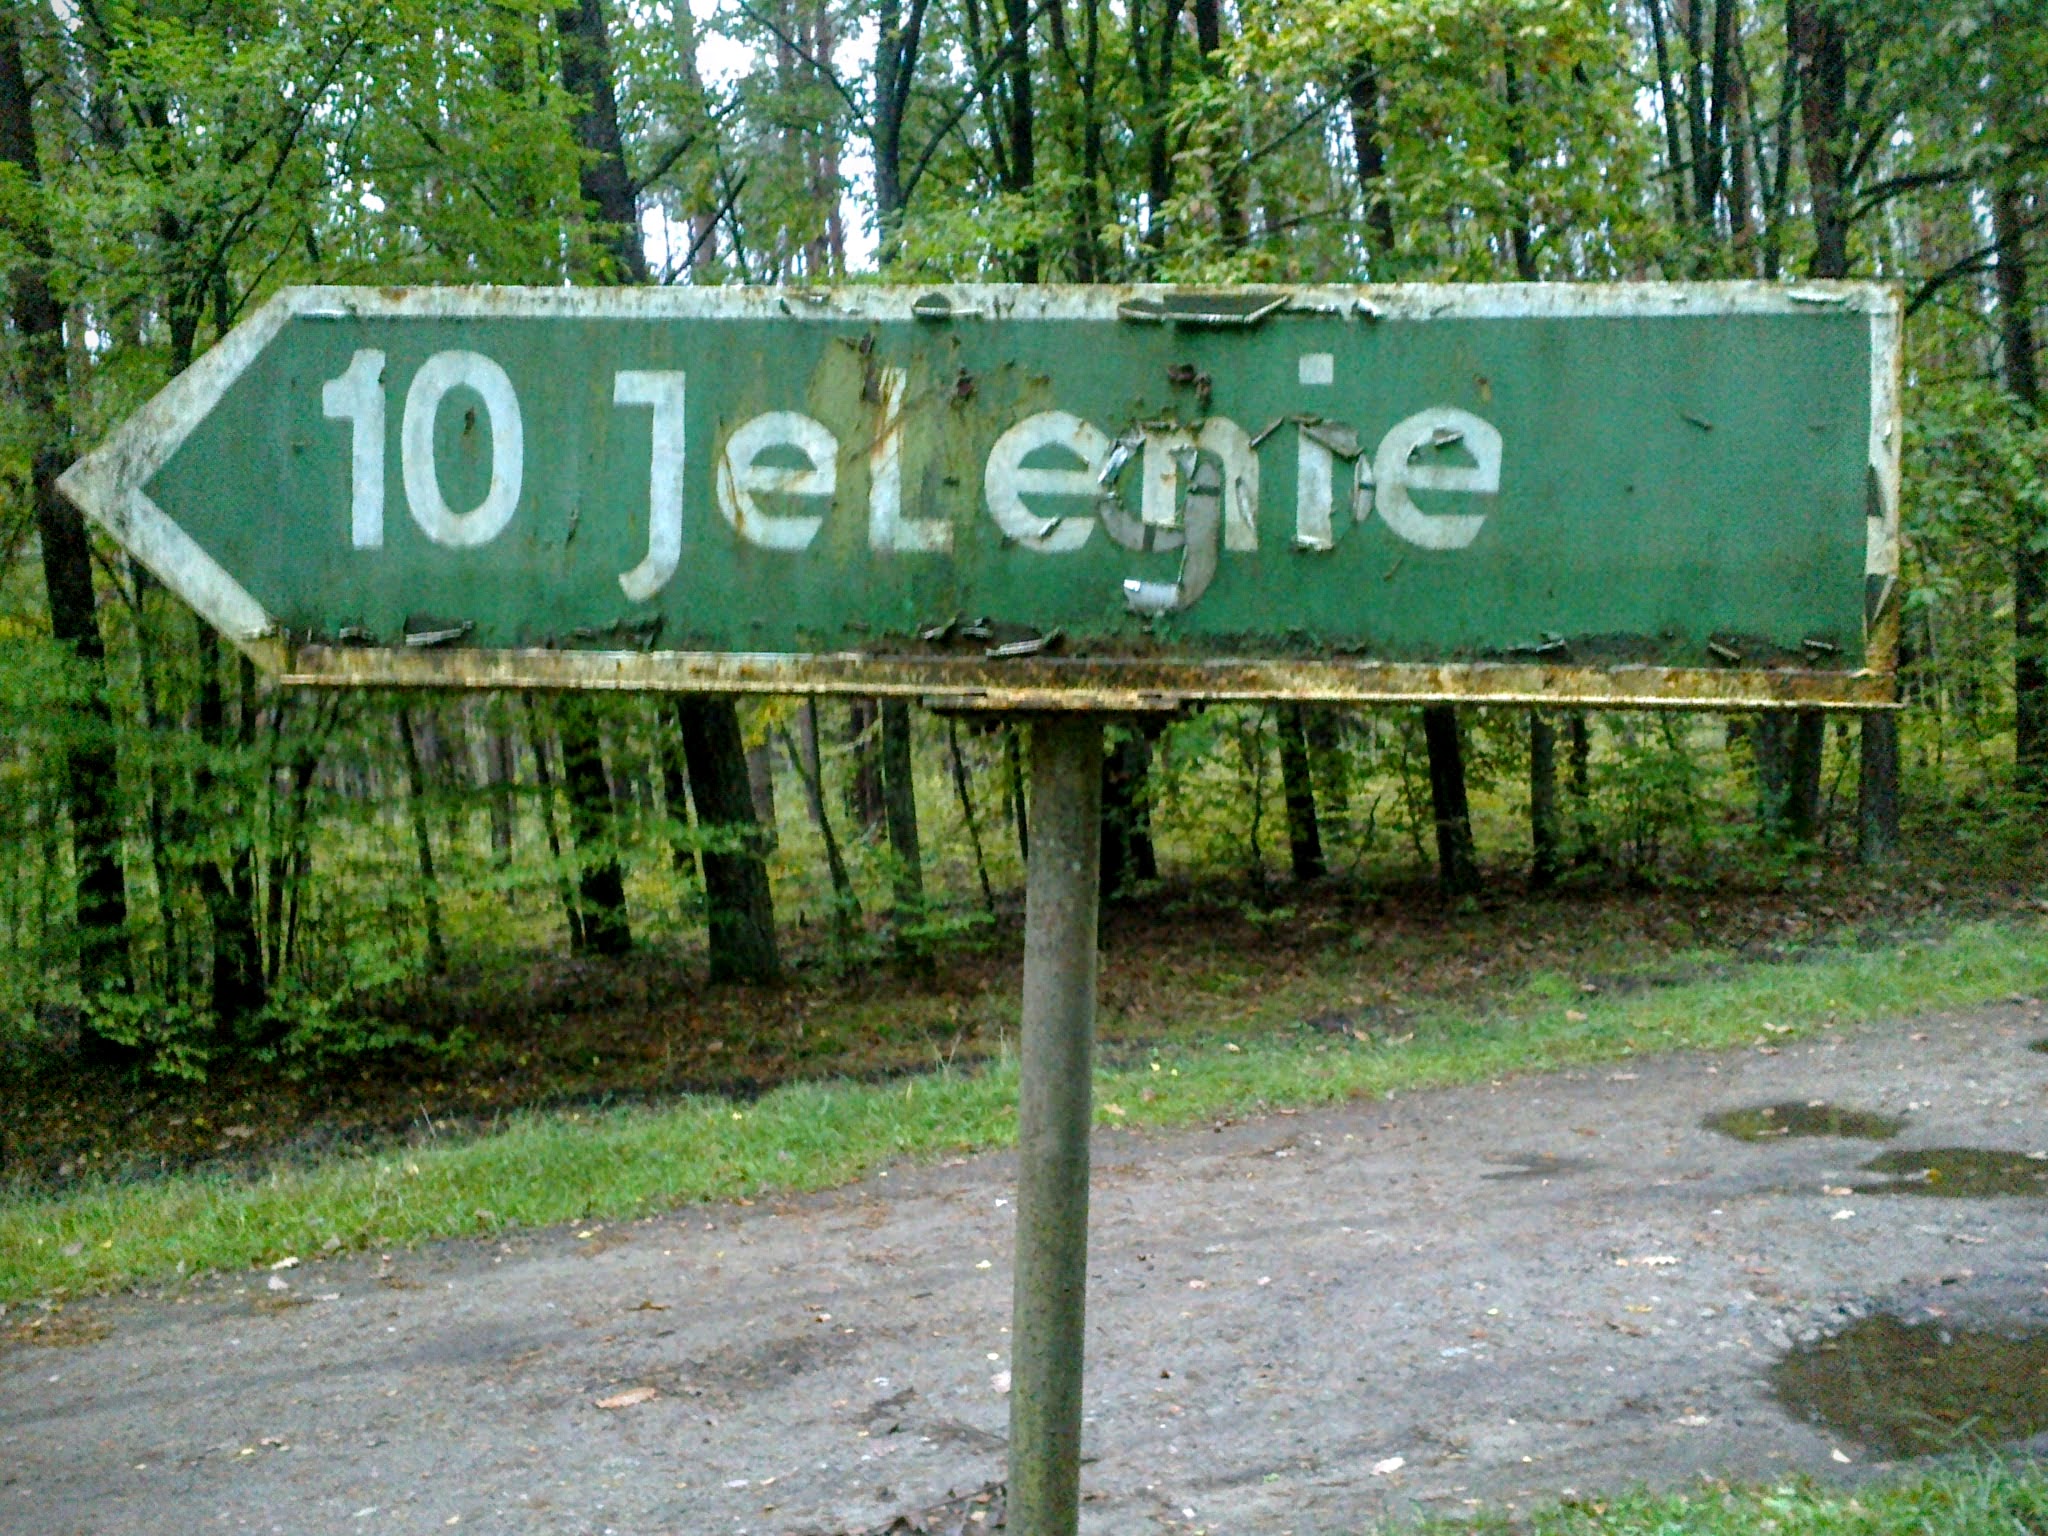 Miejscowość Jelenie